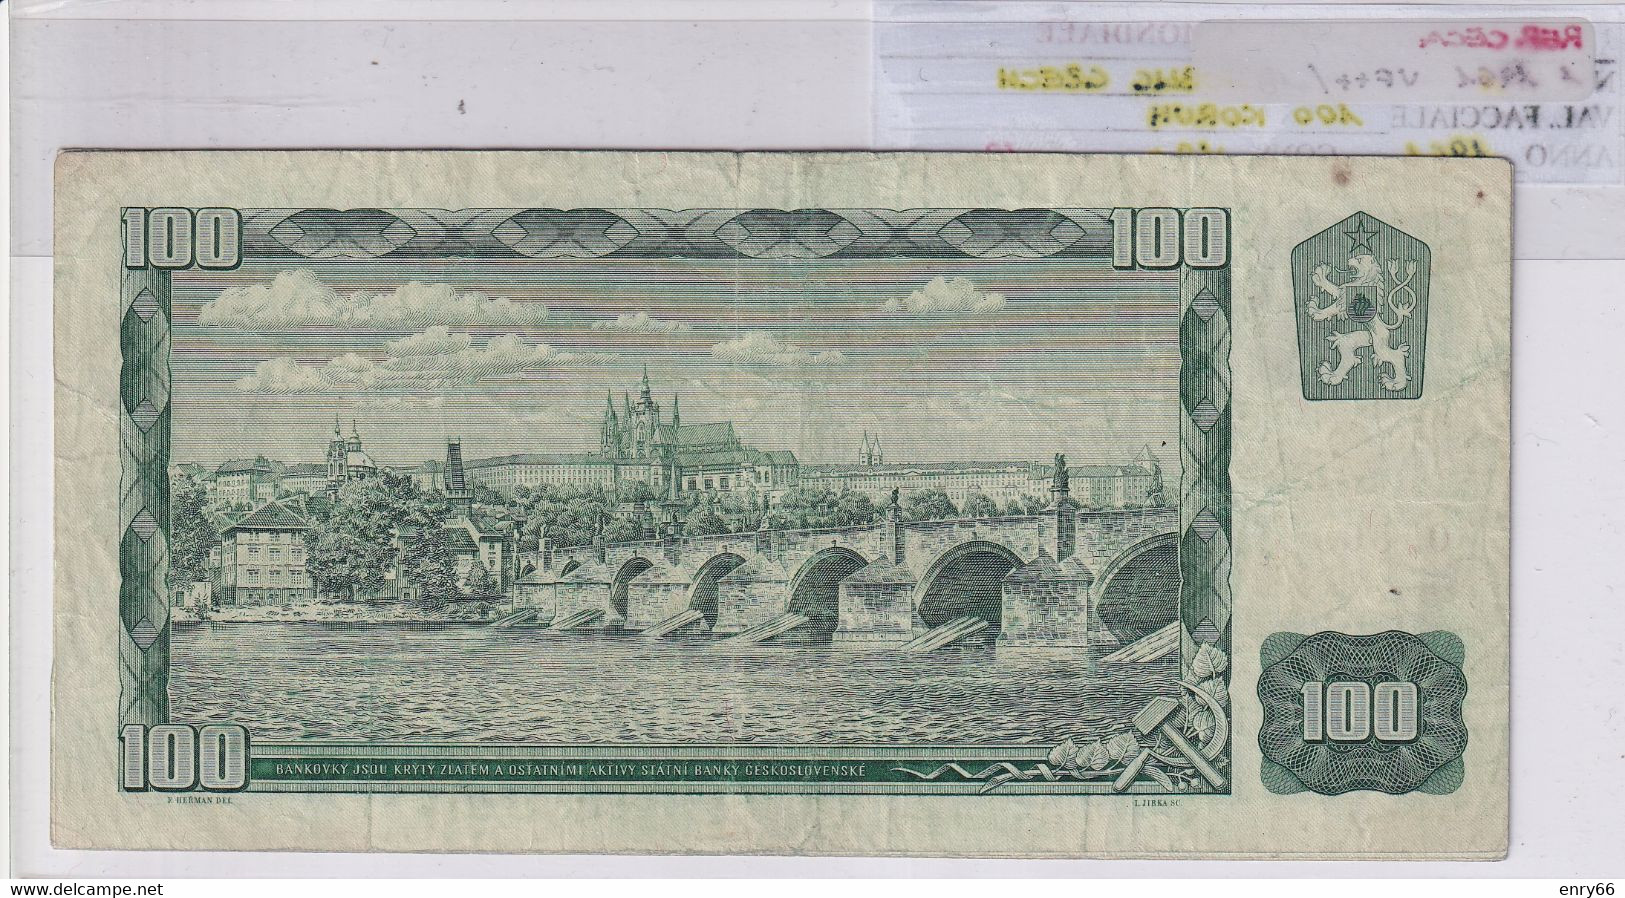 REPUBBLICA CECA 100 KORUN 1961 P 1 - Czech Republic